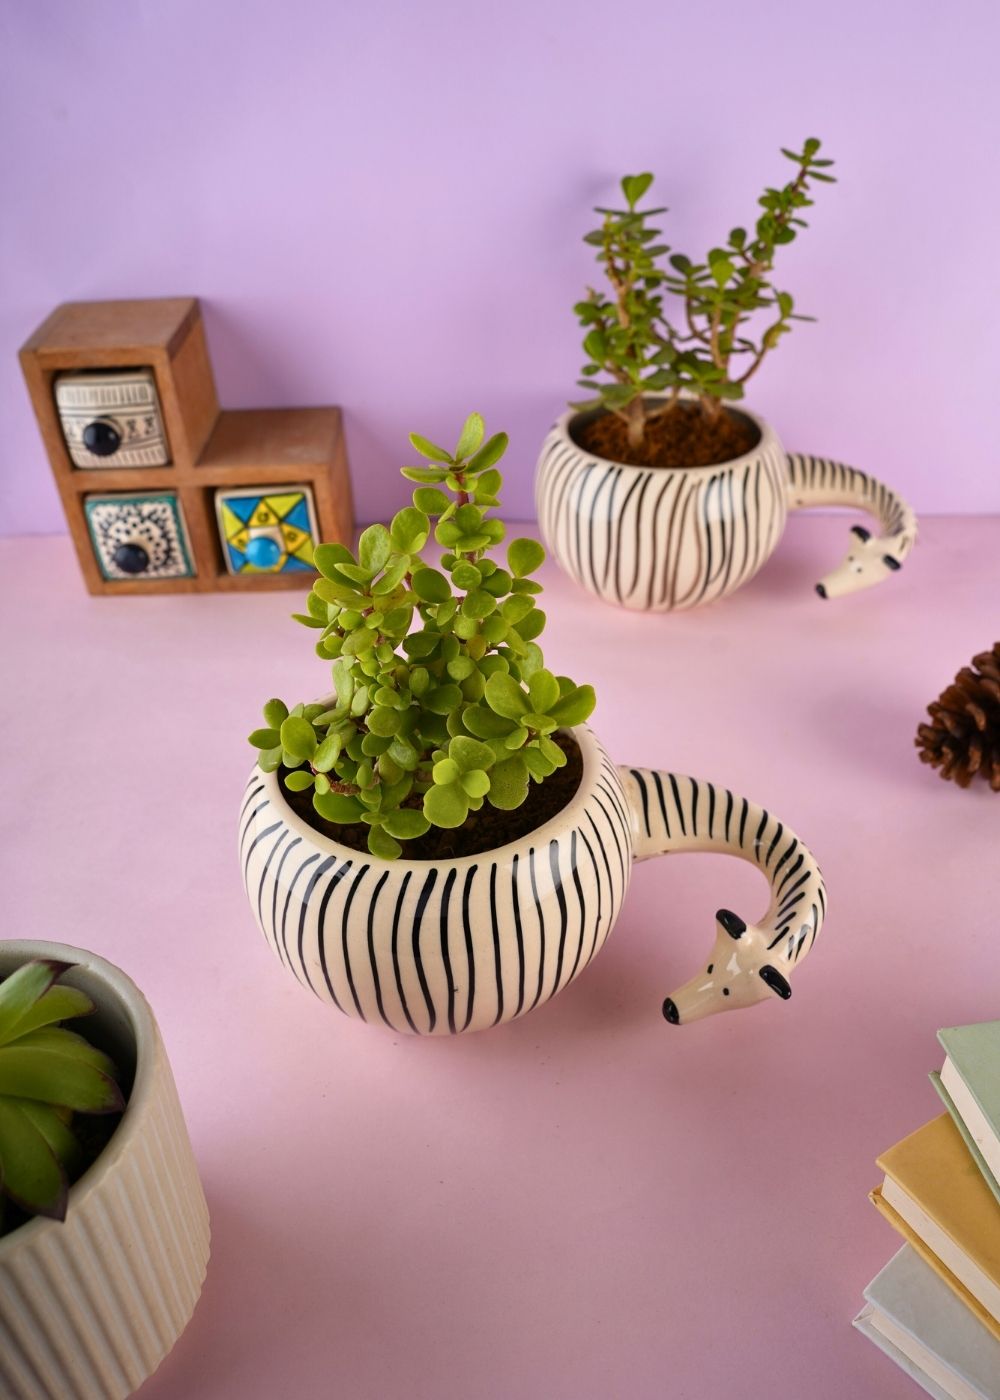 zebra planter made by ceramic